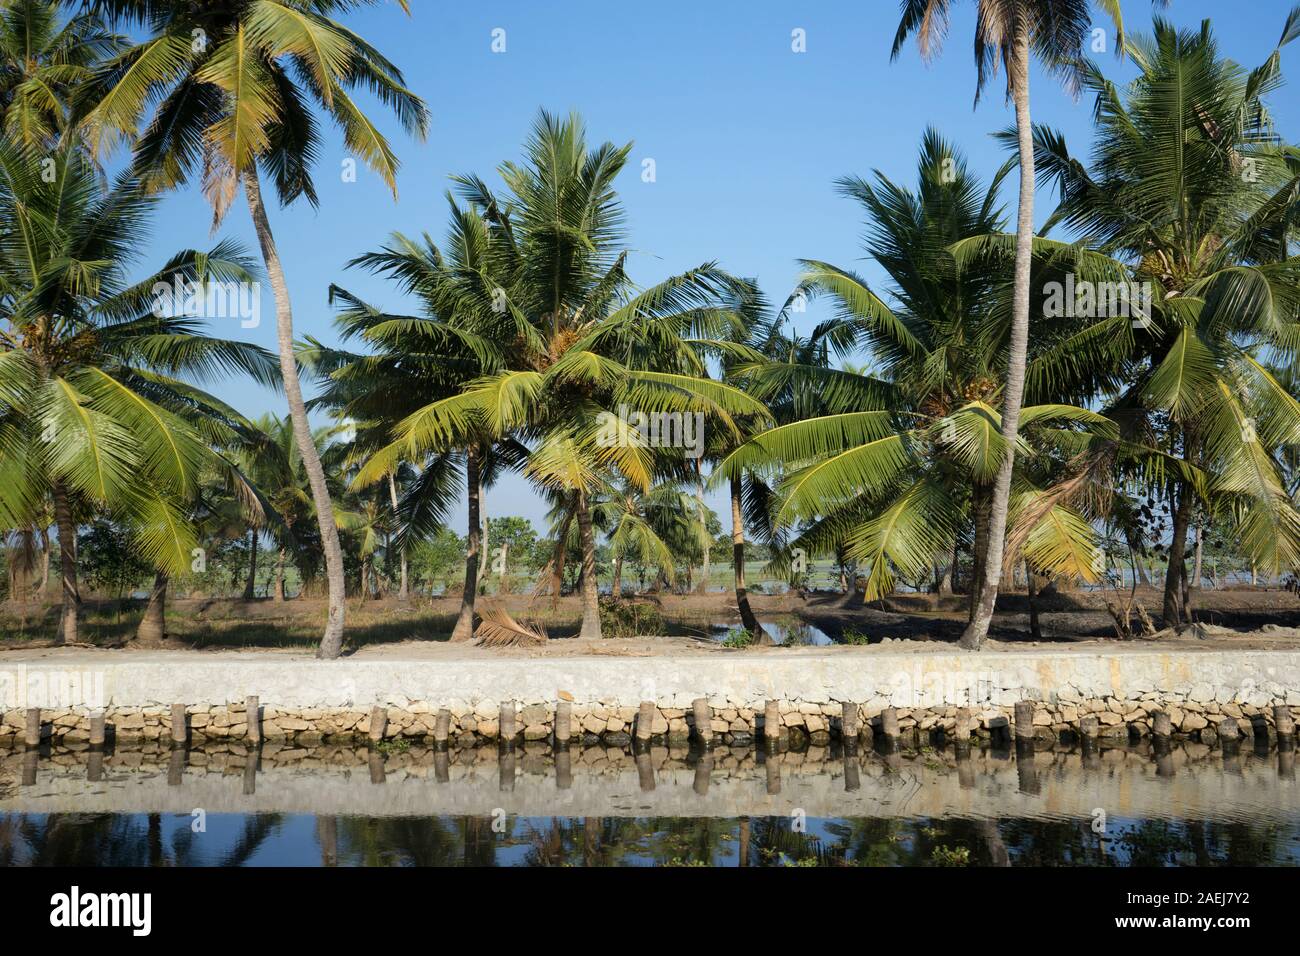 Keralan Backwaters, India Stock Photo